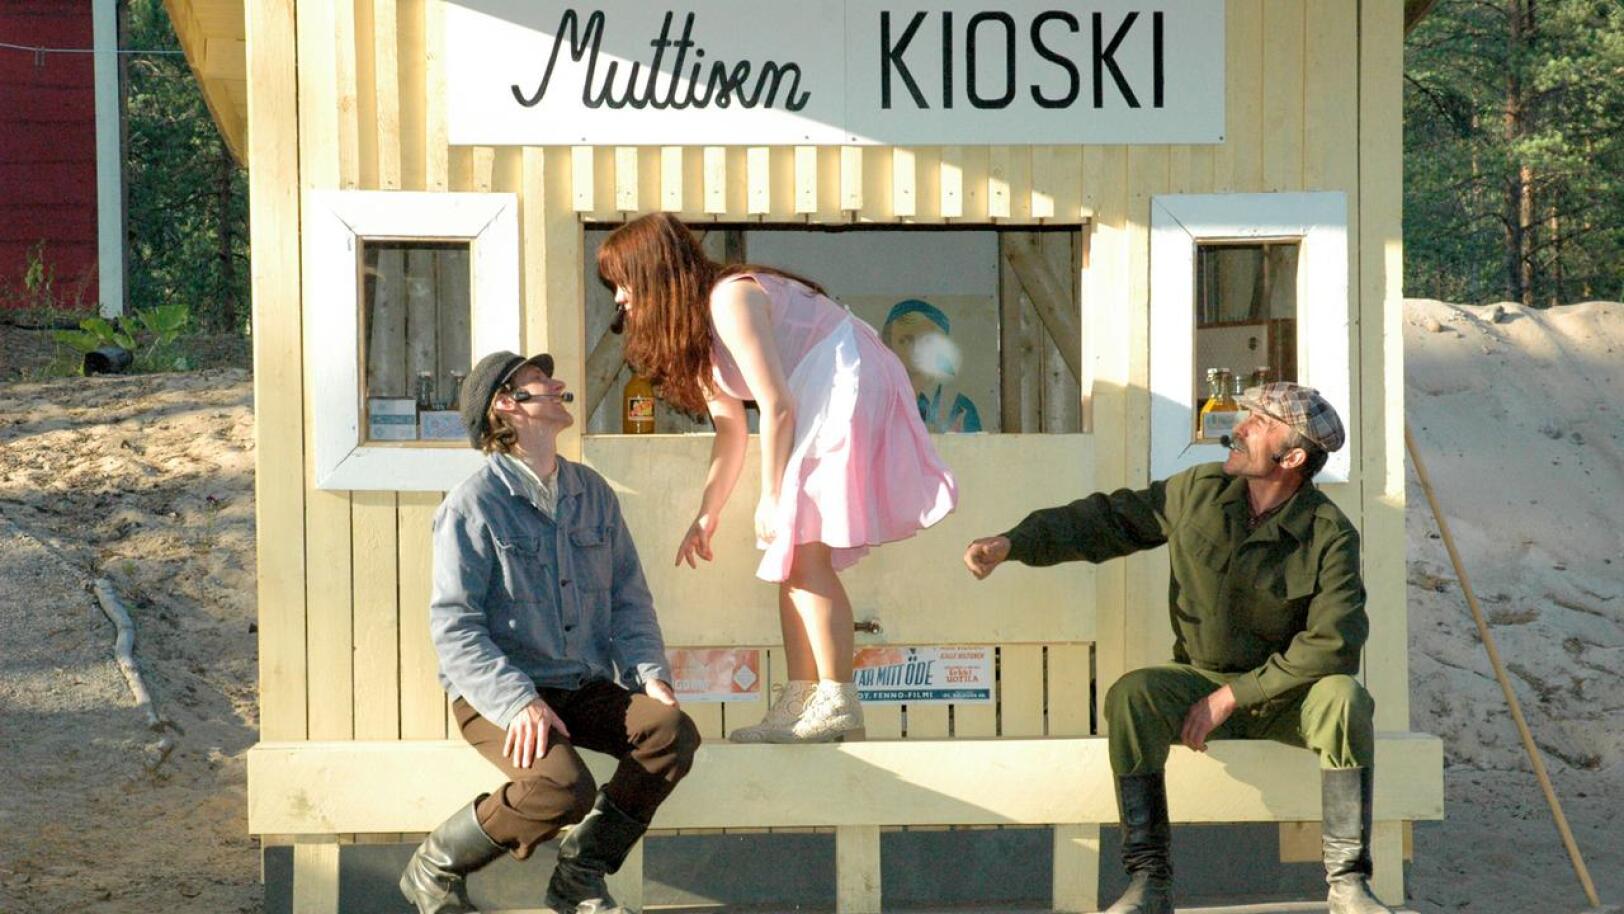 Eskolassa ei tänä kesänä nähdä kesäteatteria. Kuva vuodelta 2010, jolloin teatterissa esitettiin Jupiterin kuut. Kuvassa Juha Heikkilä,  Minna Högbacka ja Antero Iso-Kungas.